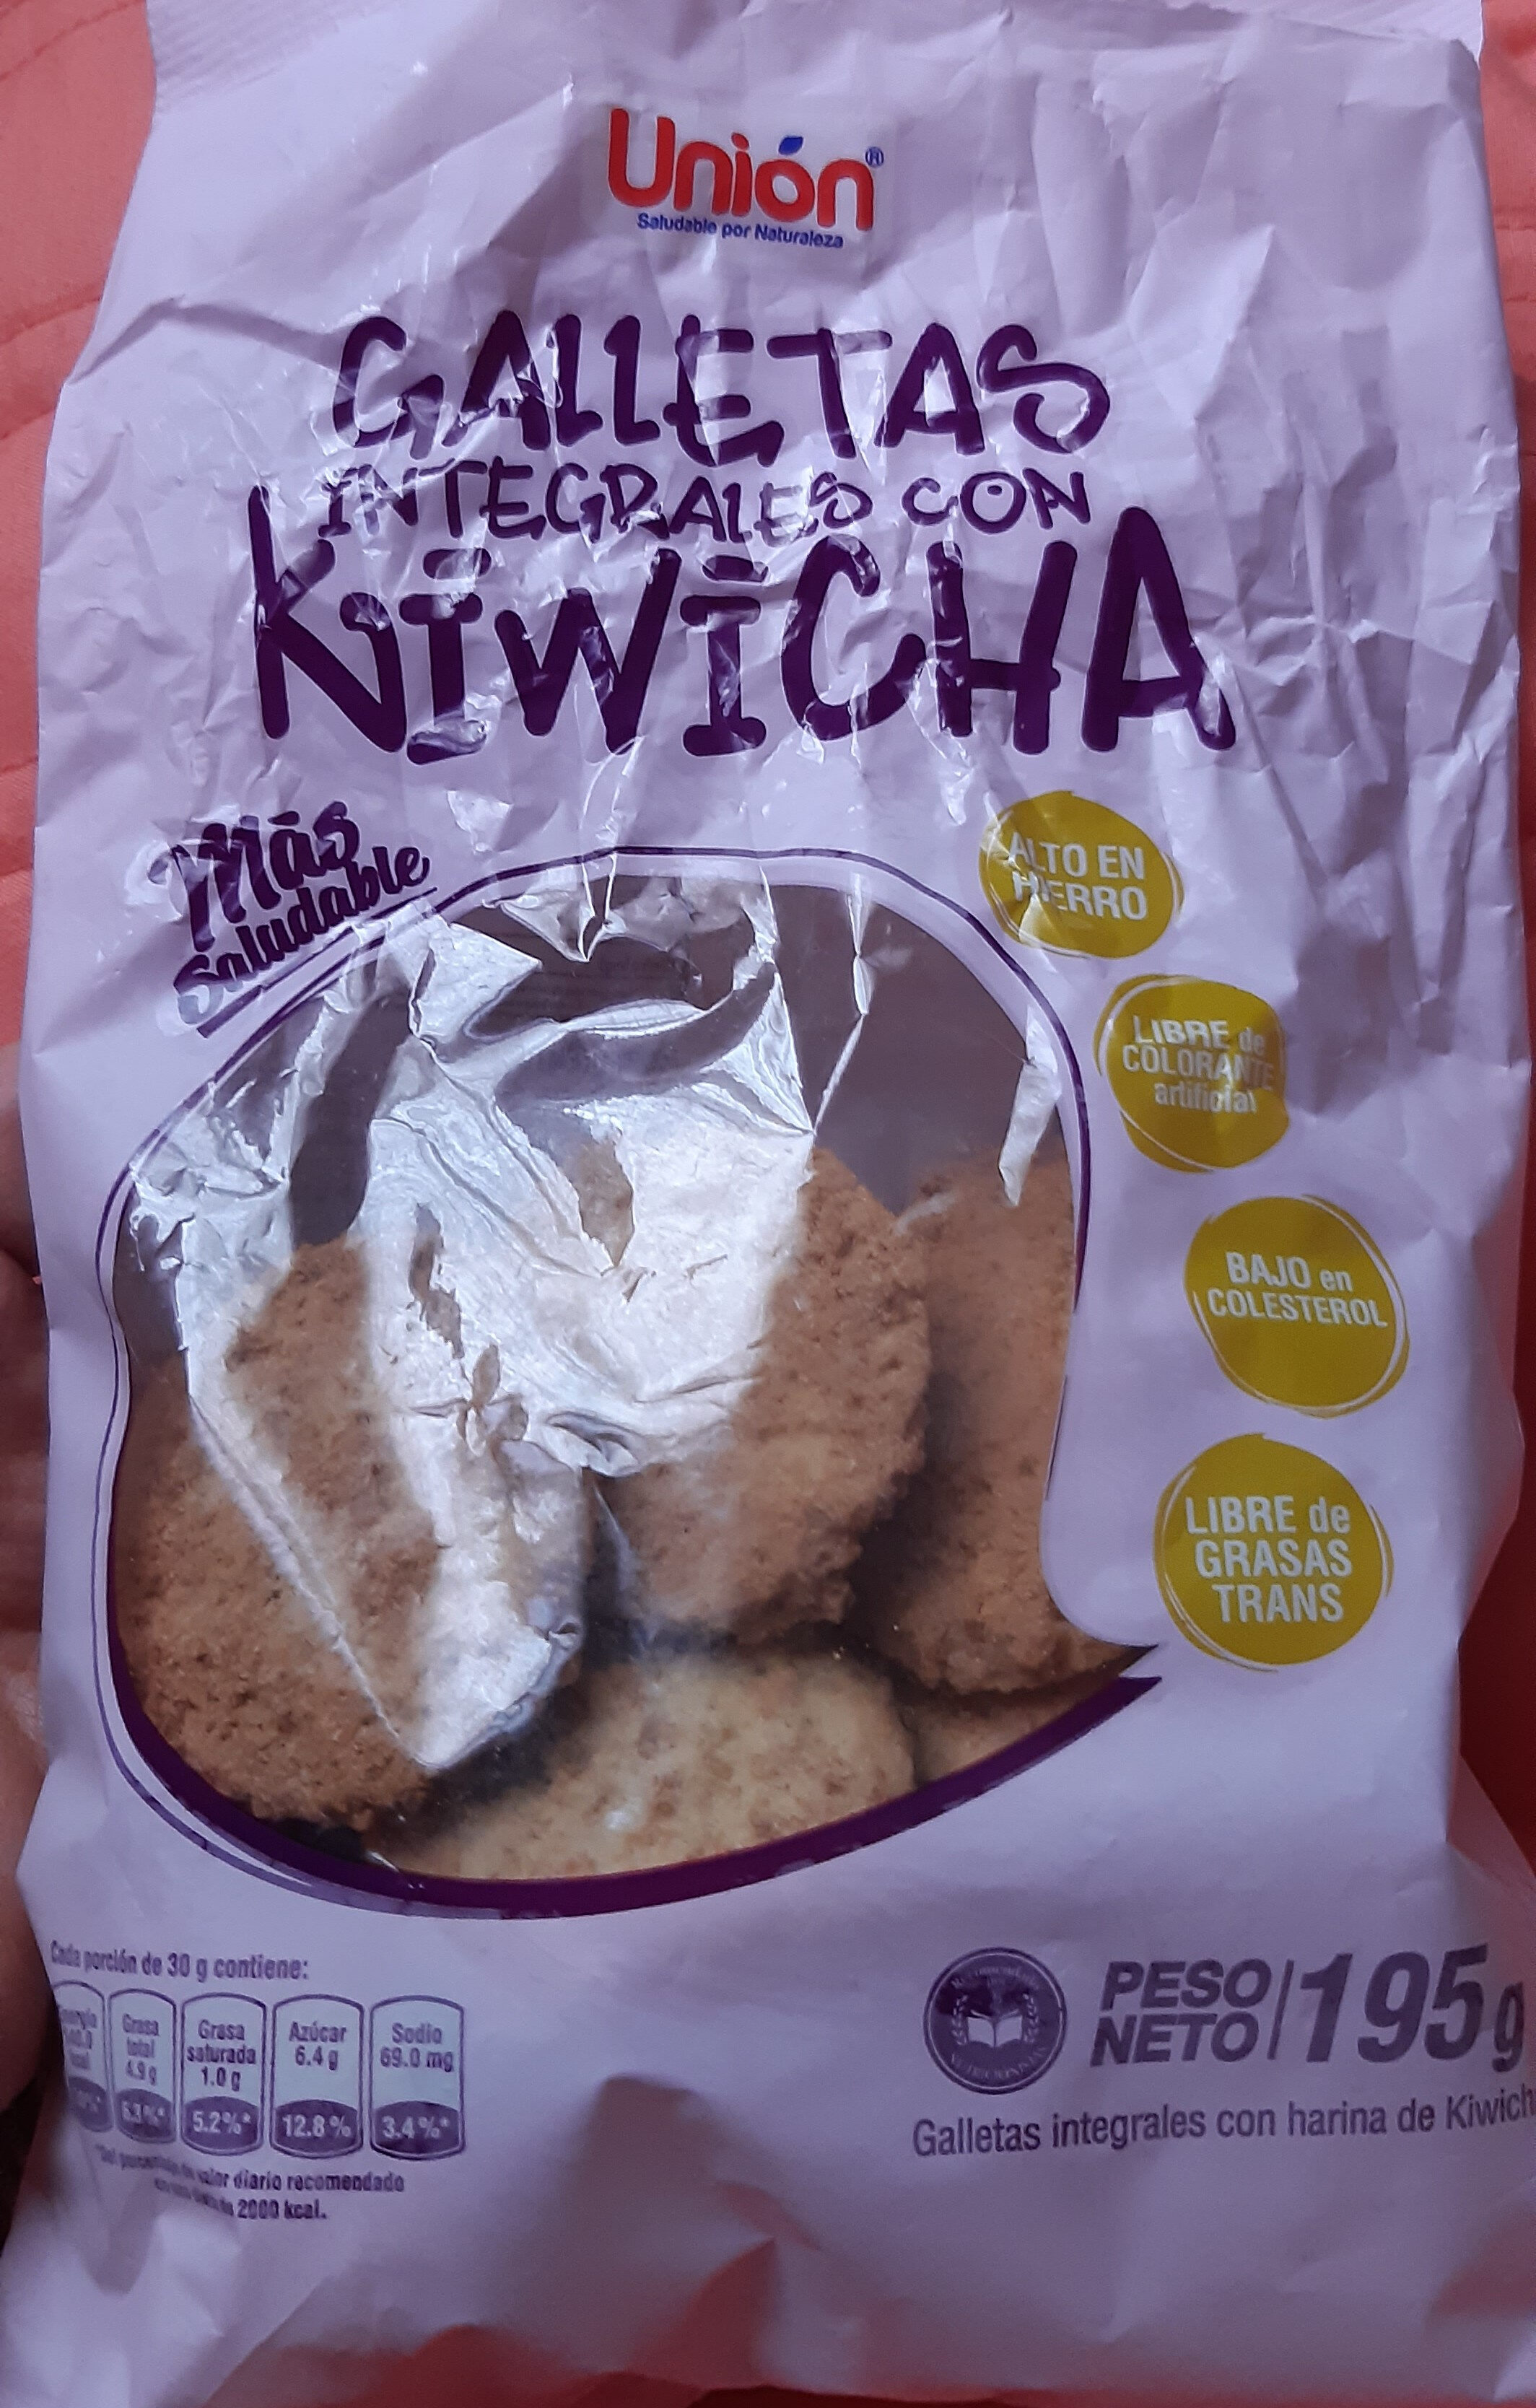 galletas integrales con kiwicha - Product - es